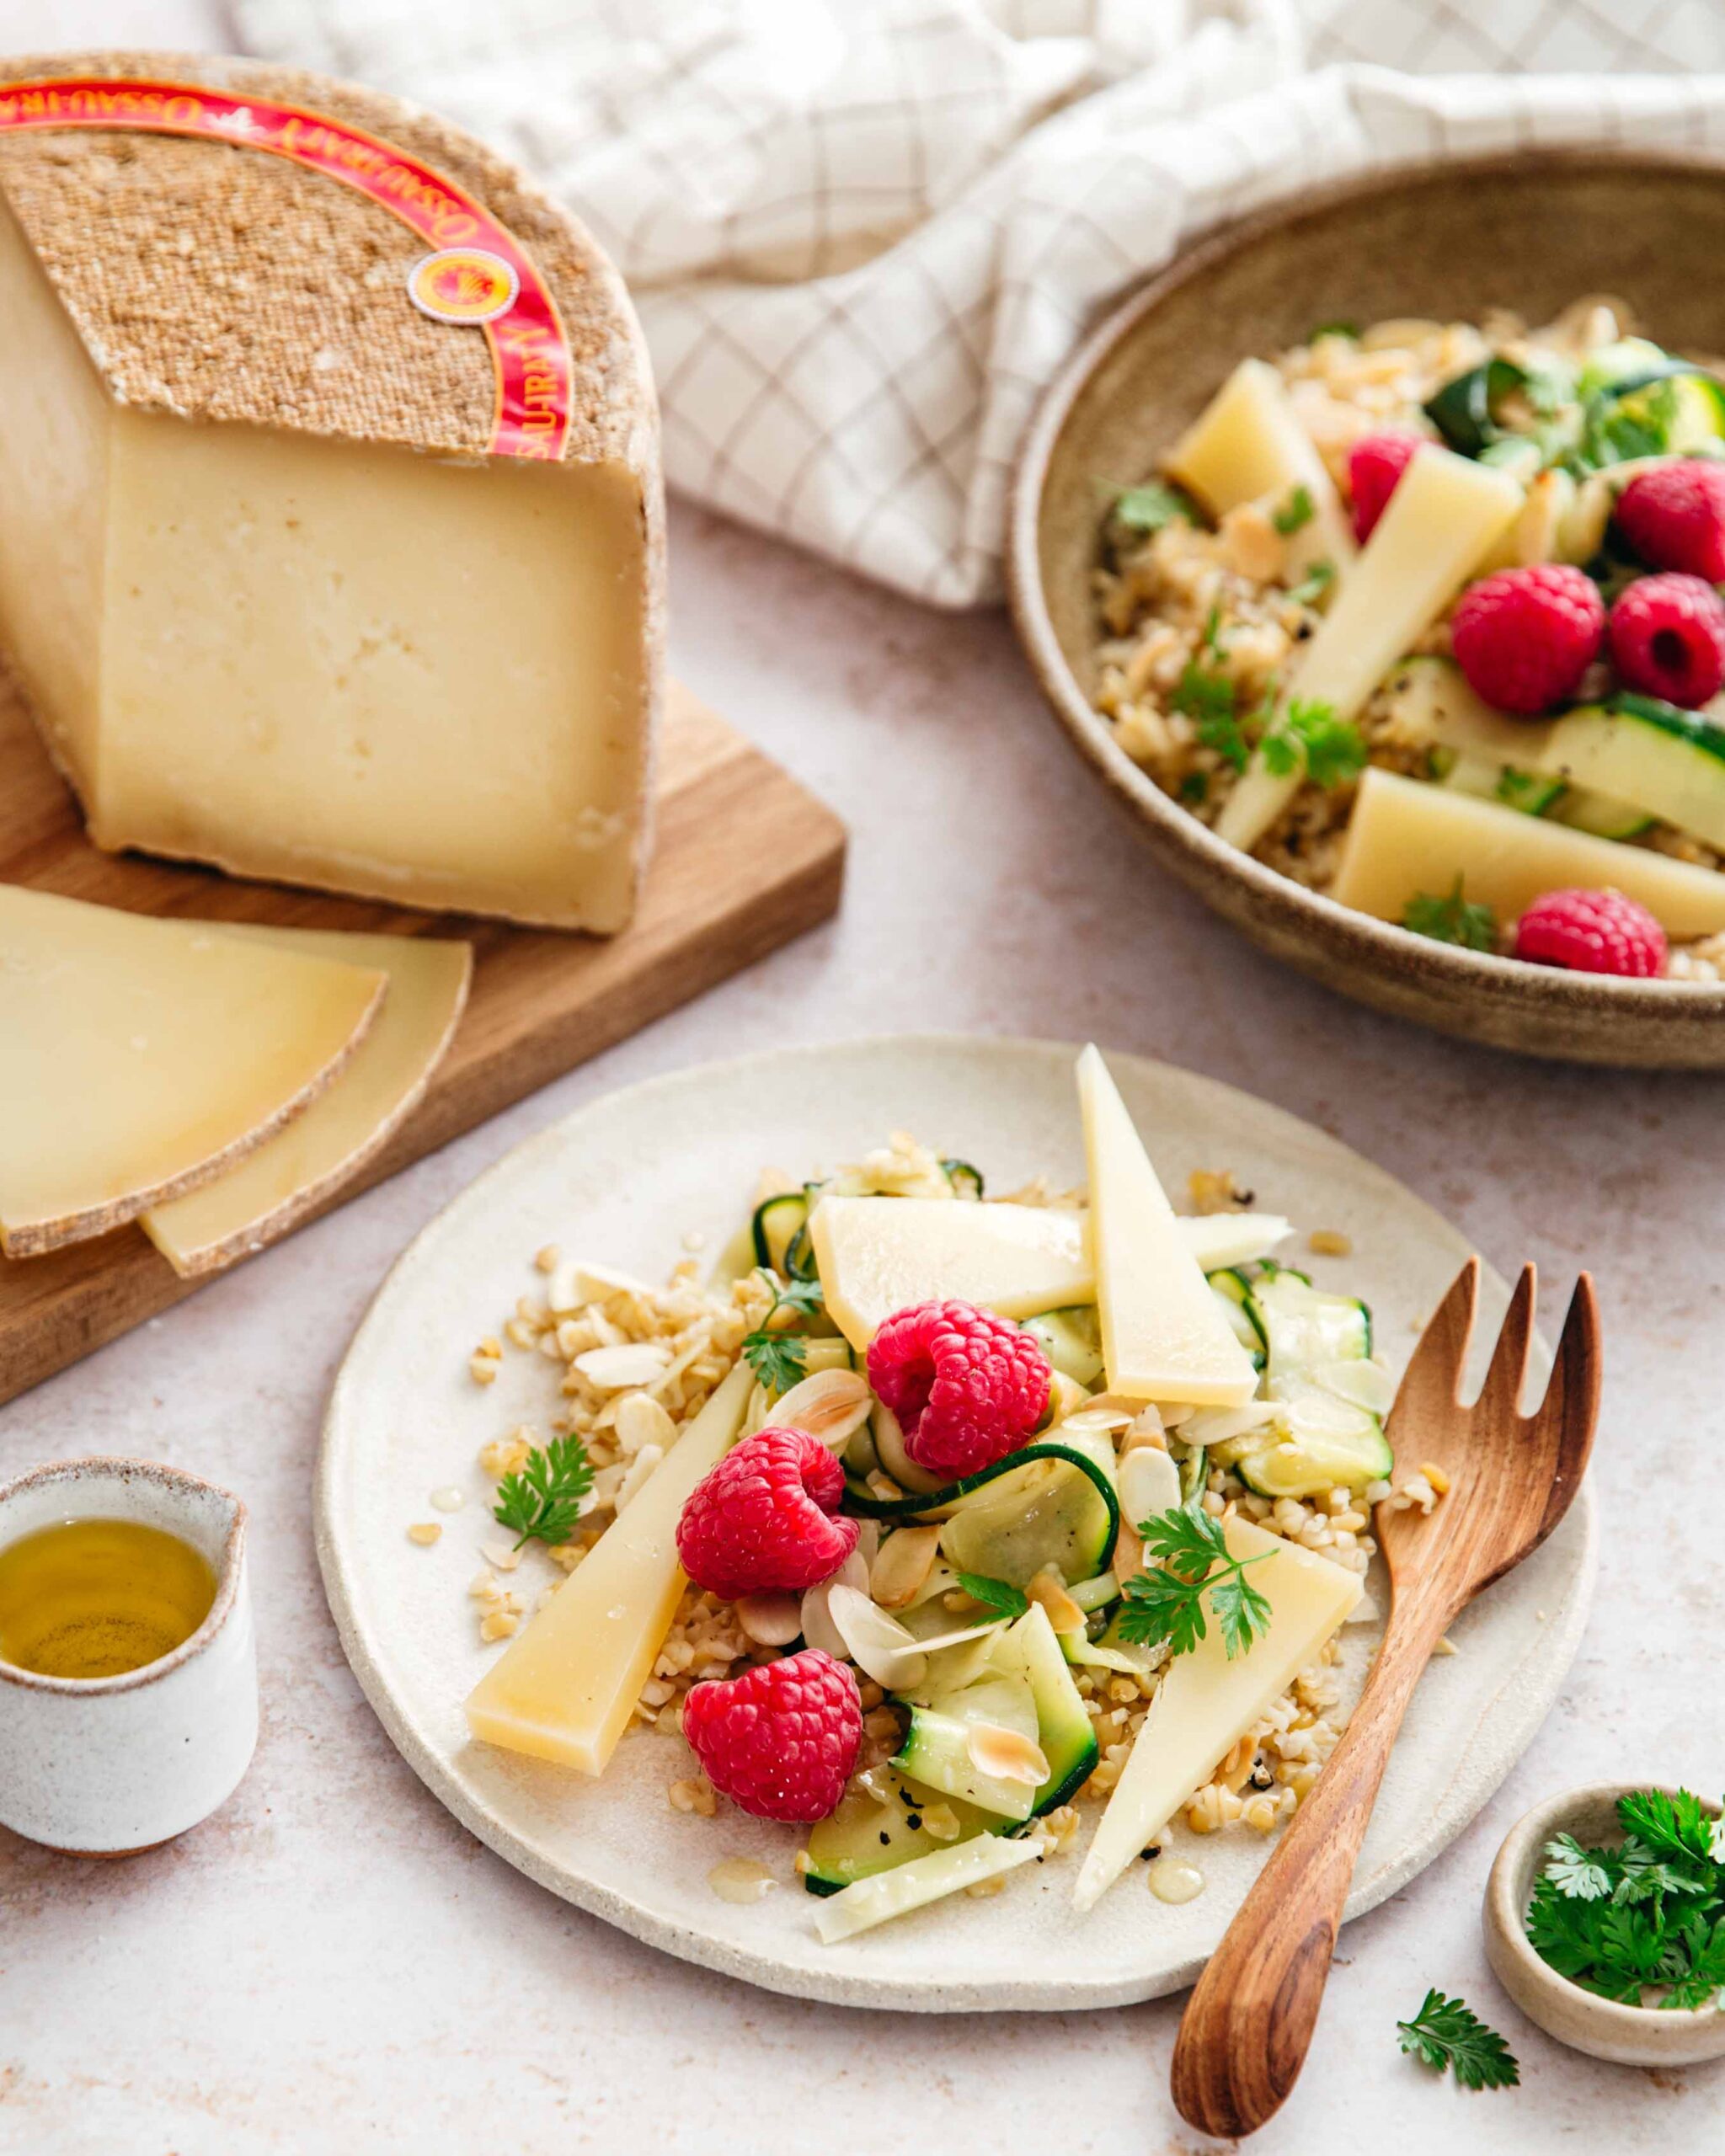 Salade composée pour la mise en valeur du fromage AOP Osa-Iraty. Création de recette, stylisme et photo pour l'agence de relations presse Hémisphère Sud.